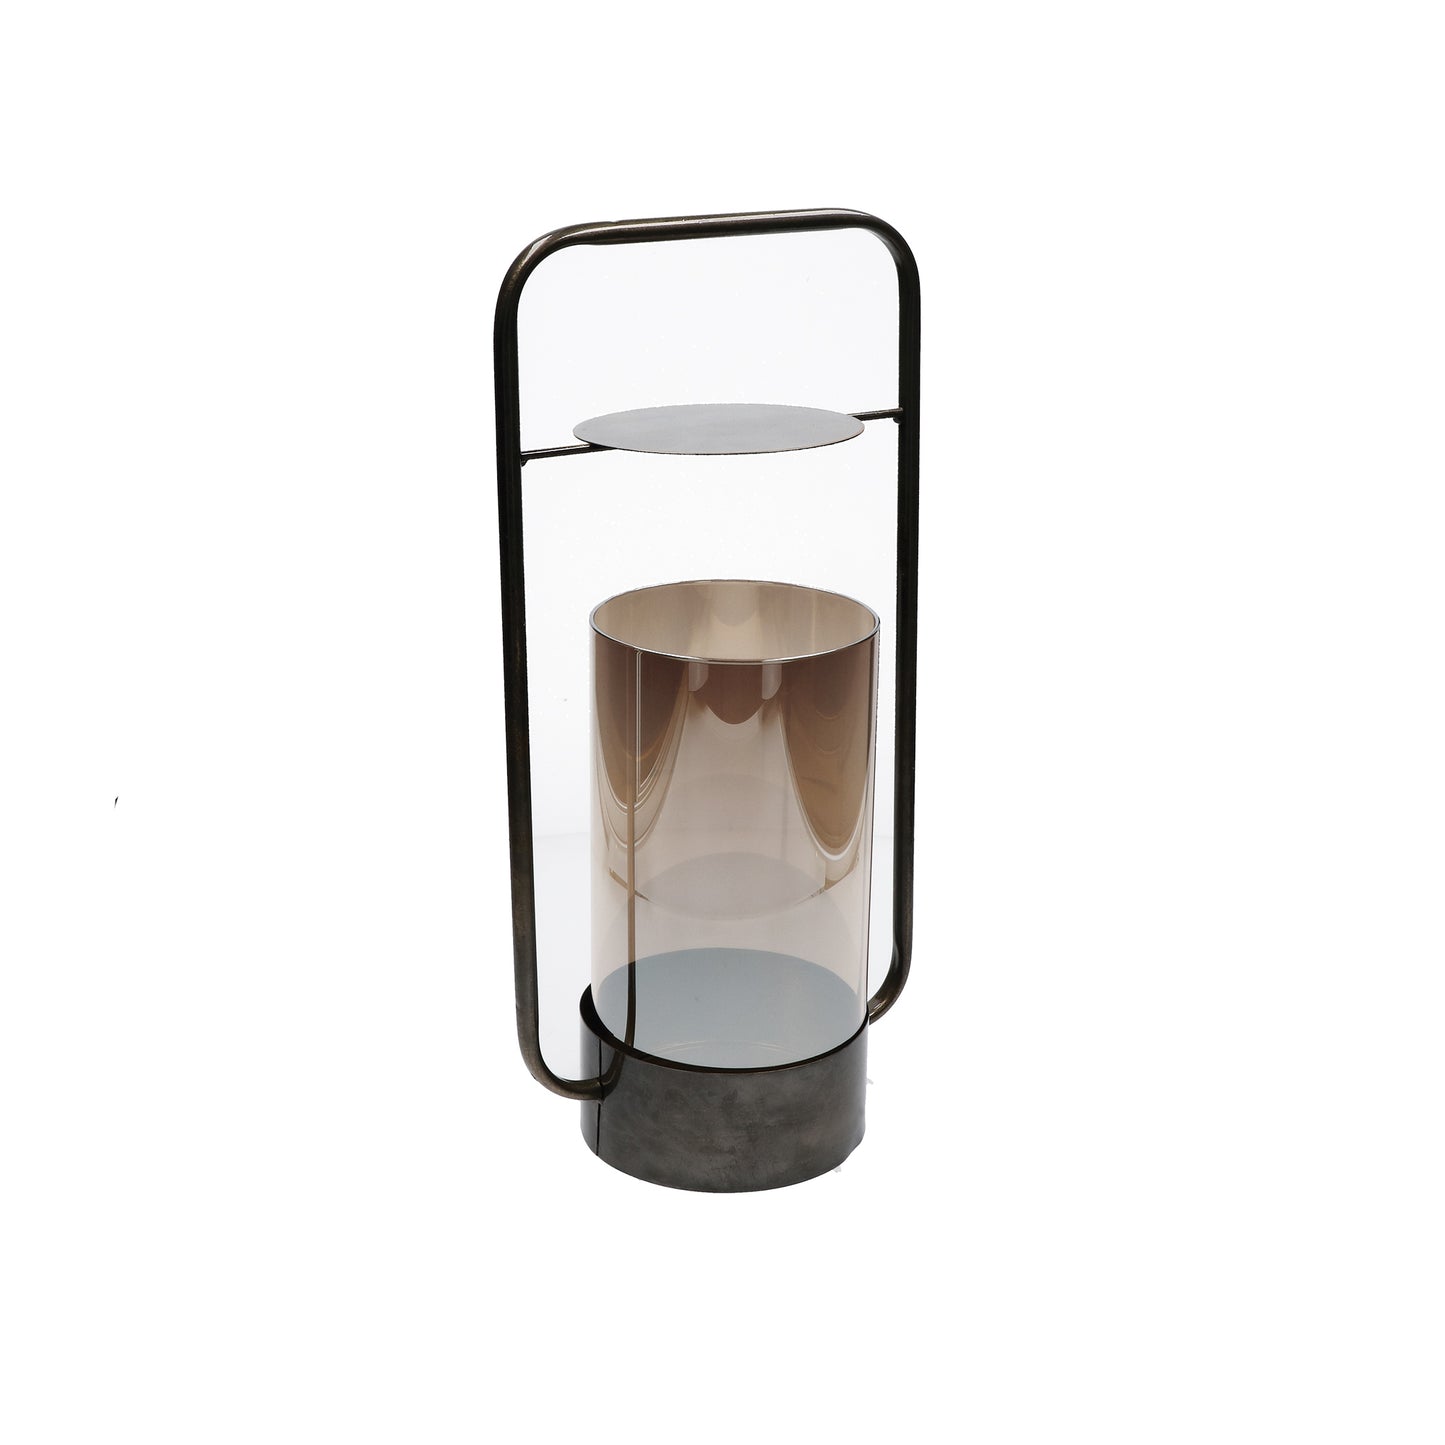 Lanterna In Vetro color fumè con manico esterno in metallo di colore bronzo. Dimensioni: cm 20 x 14 x 43 h. In negozio e online su tuttochic.it